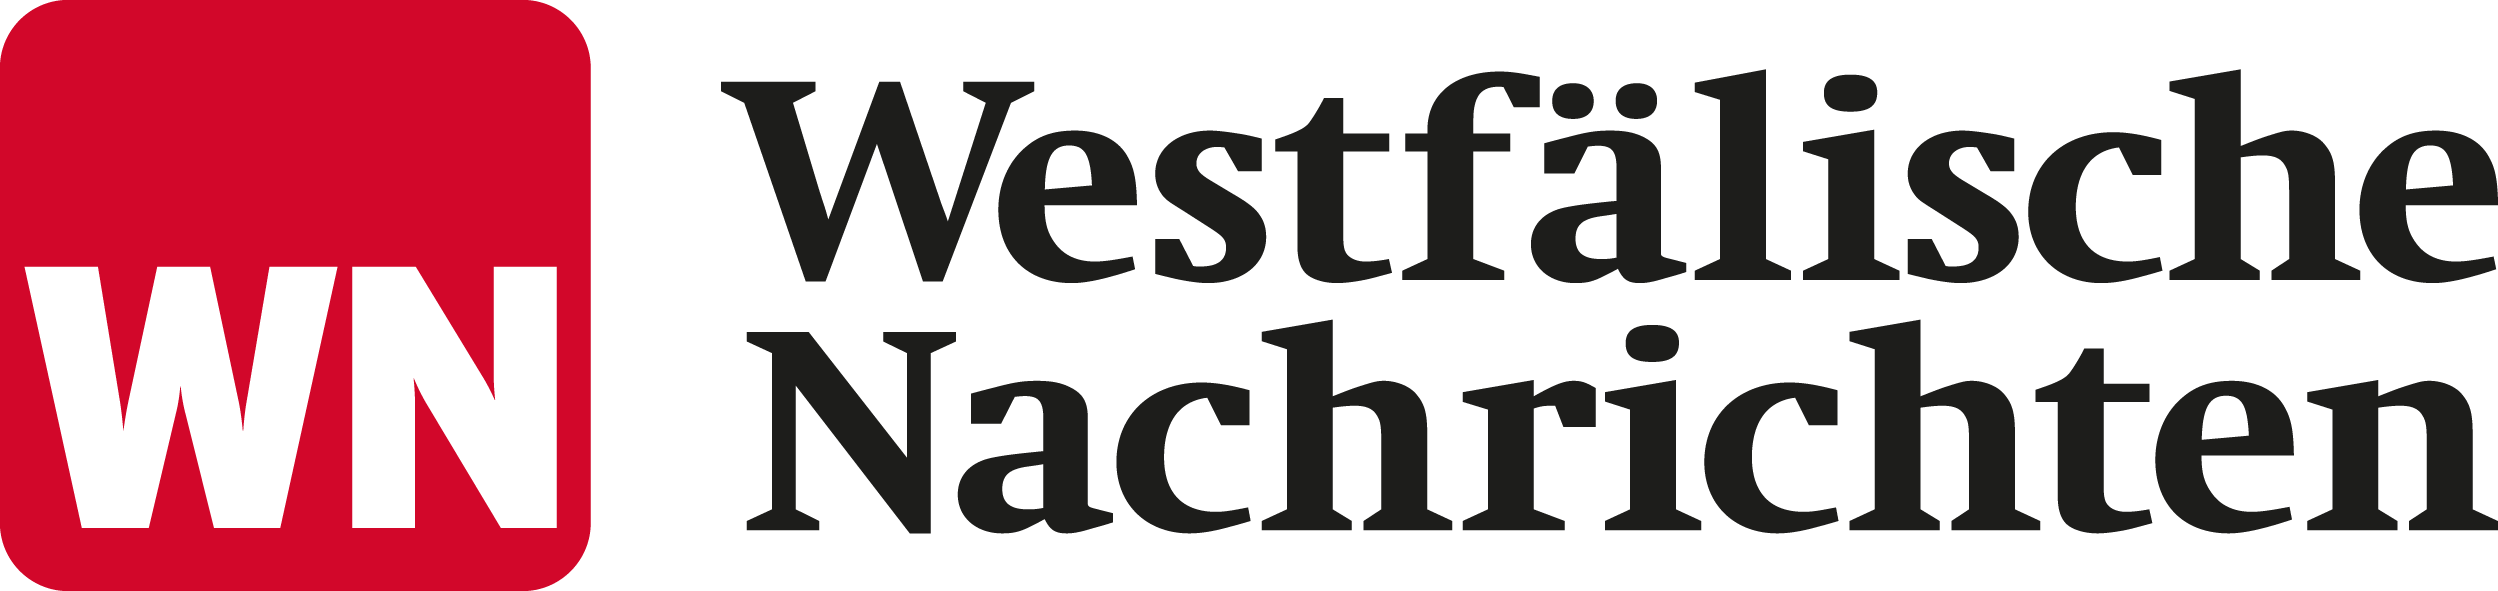 WN - Westfälische Nachrichten